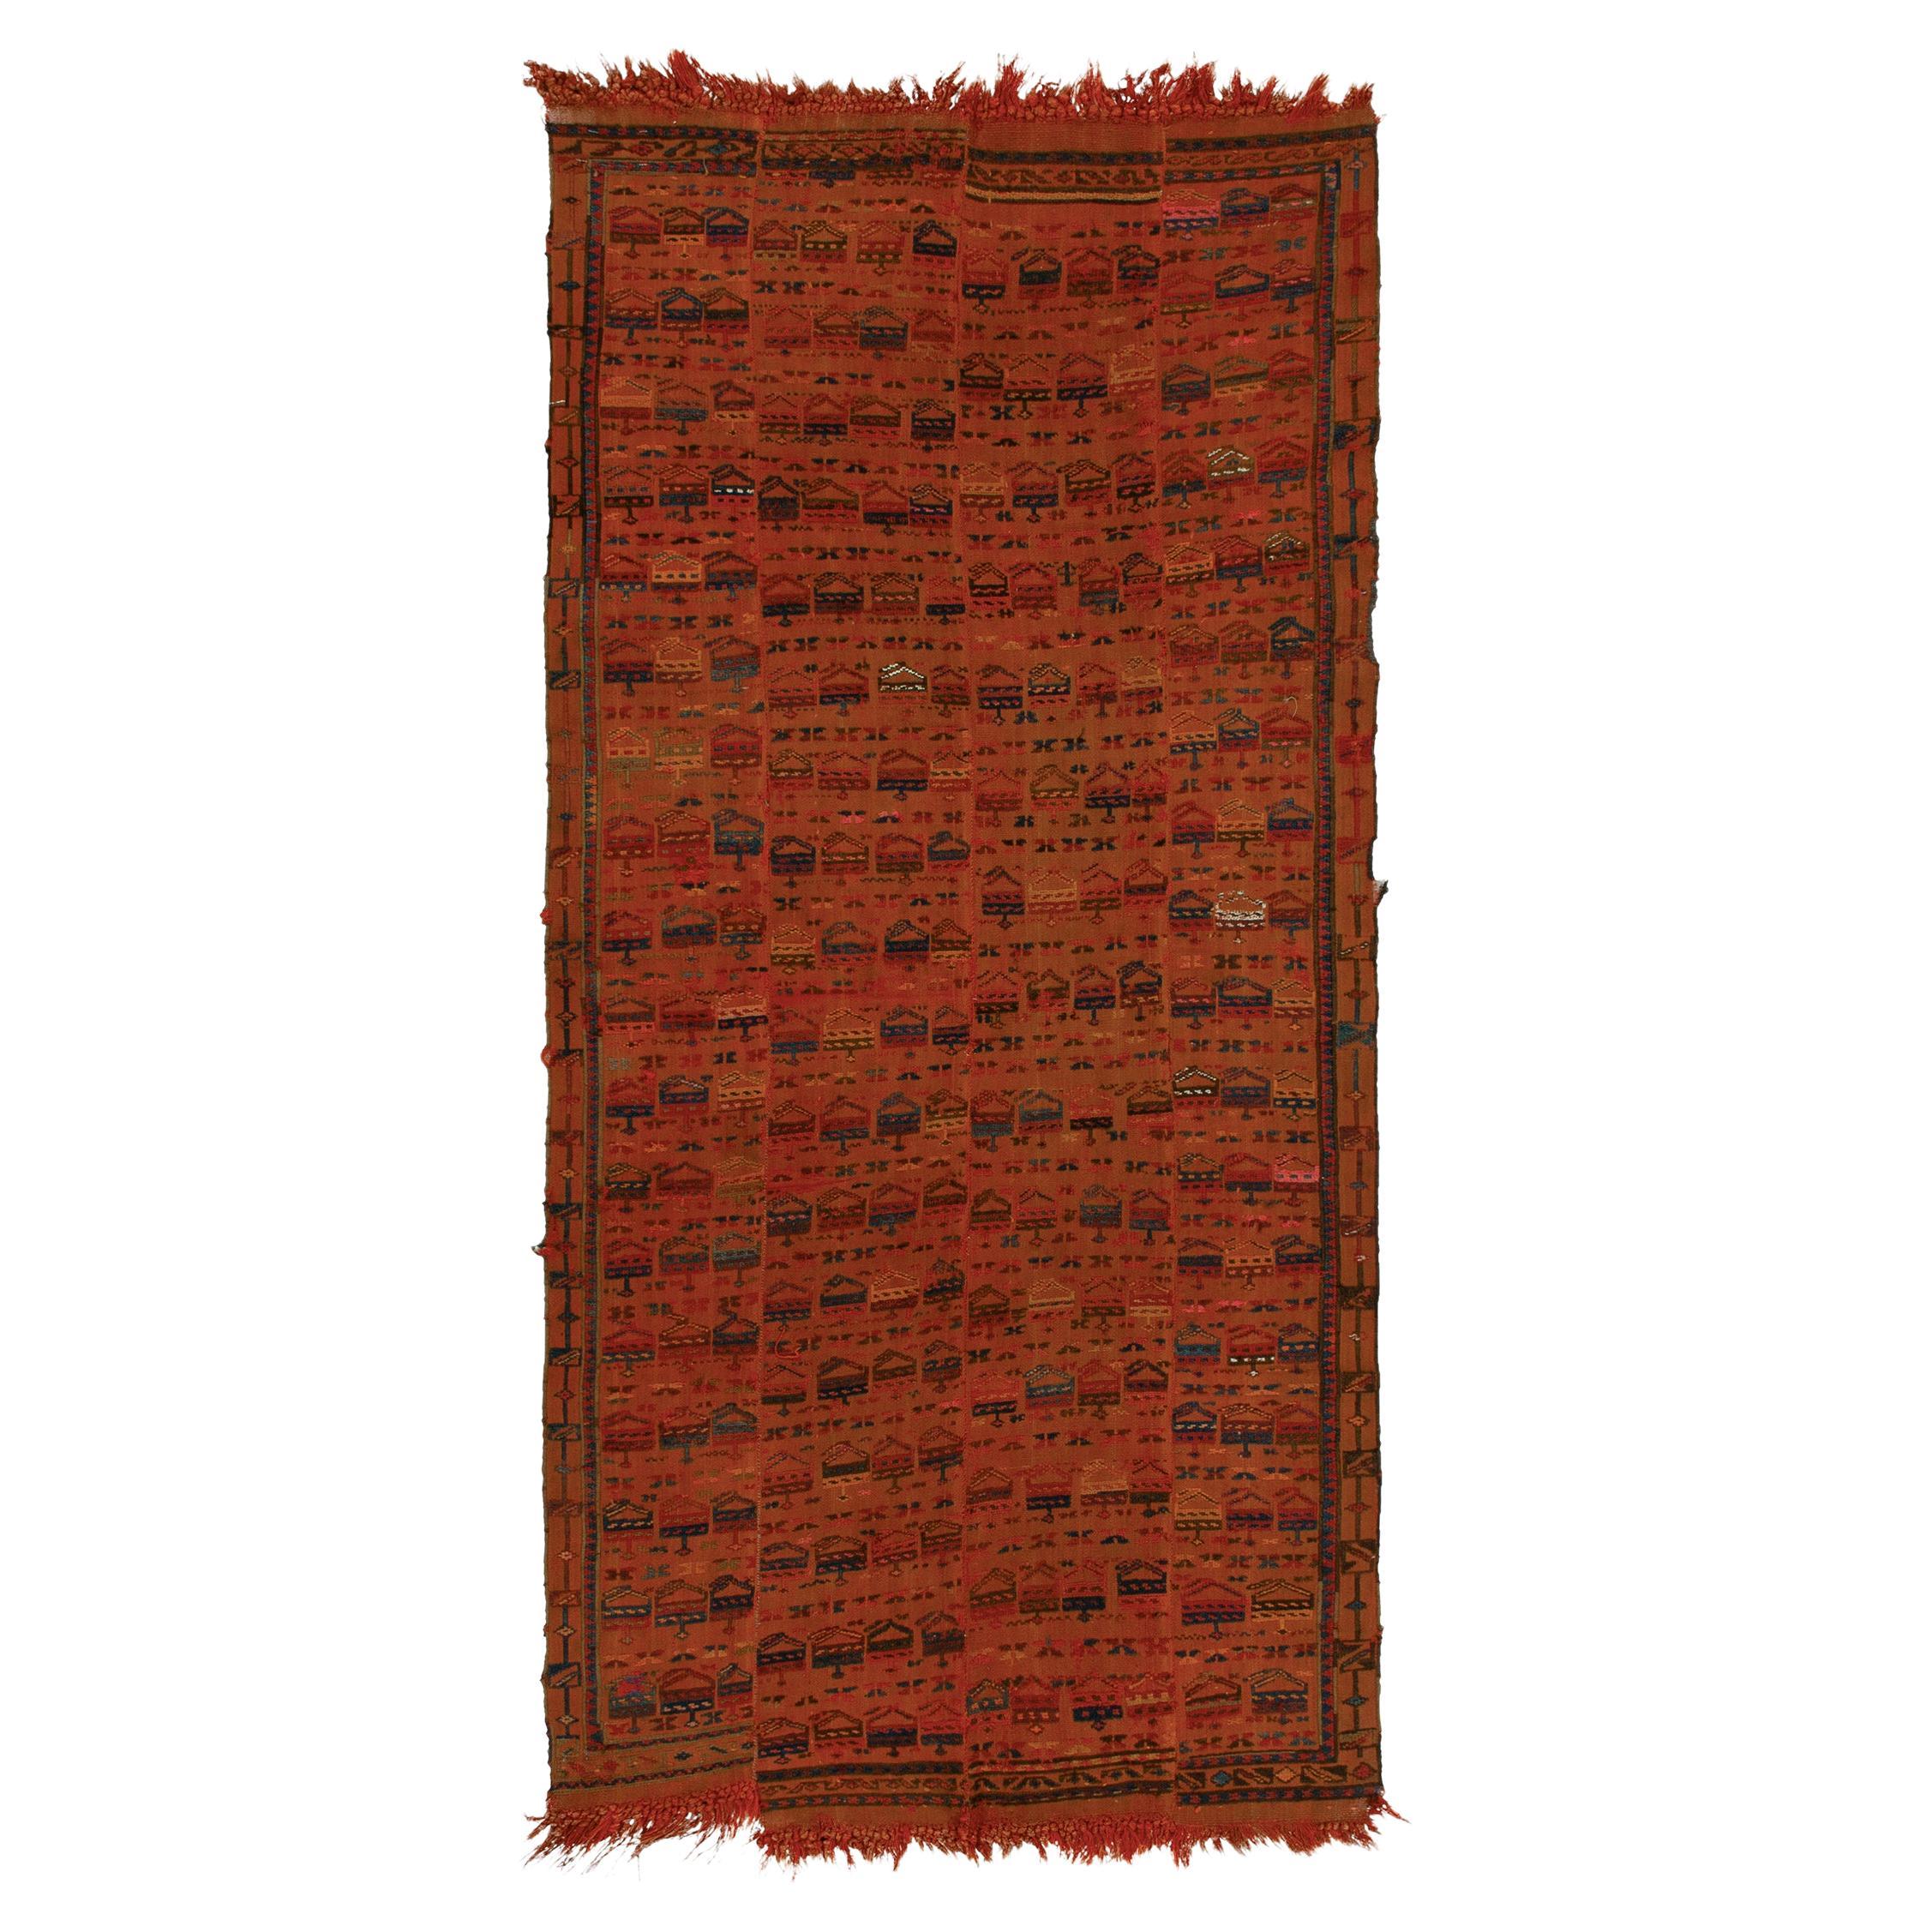 Tapis Kilim ancien de Verneh aux motifs géométriques orange, bleu et rouge par Rug & Kilim